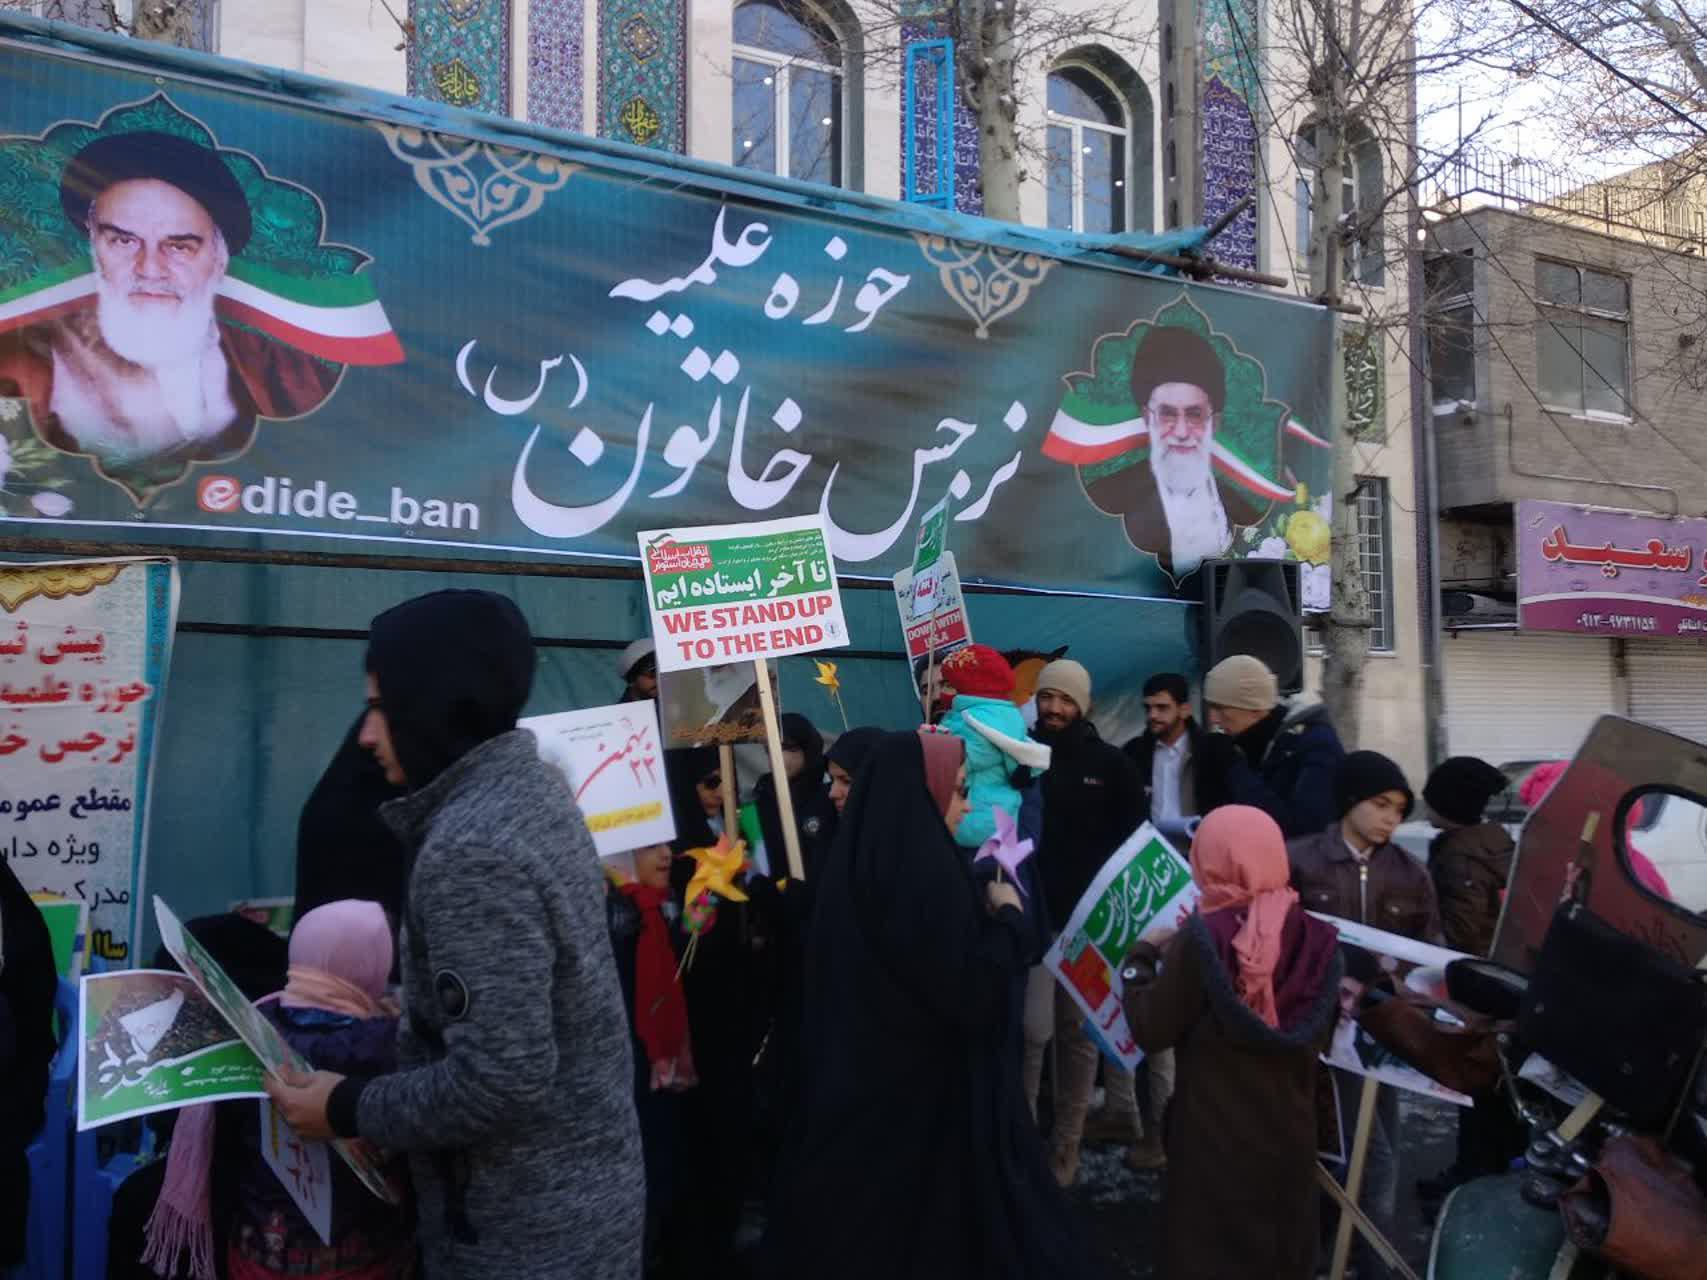 مدرسه علمیه نرجس خاتون غرفه تبلیغی در مسیر راهپیمایی 22 بهمن برپا کرد